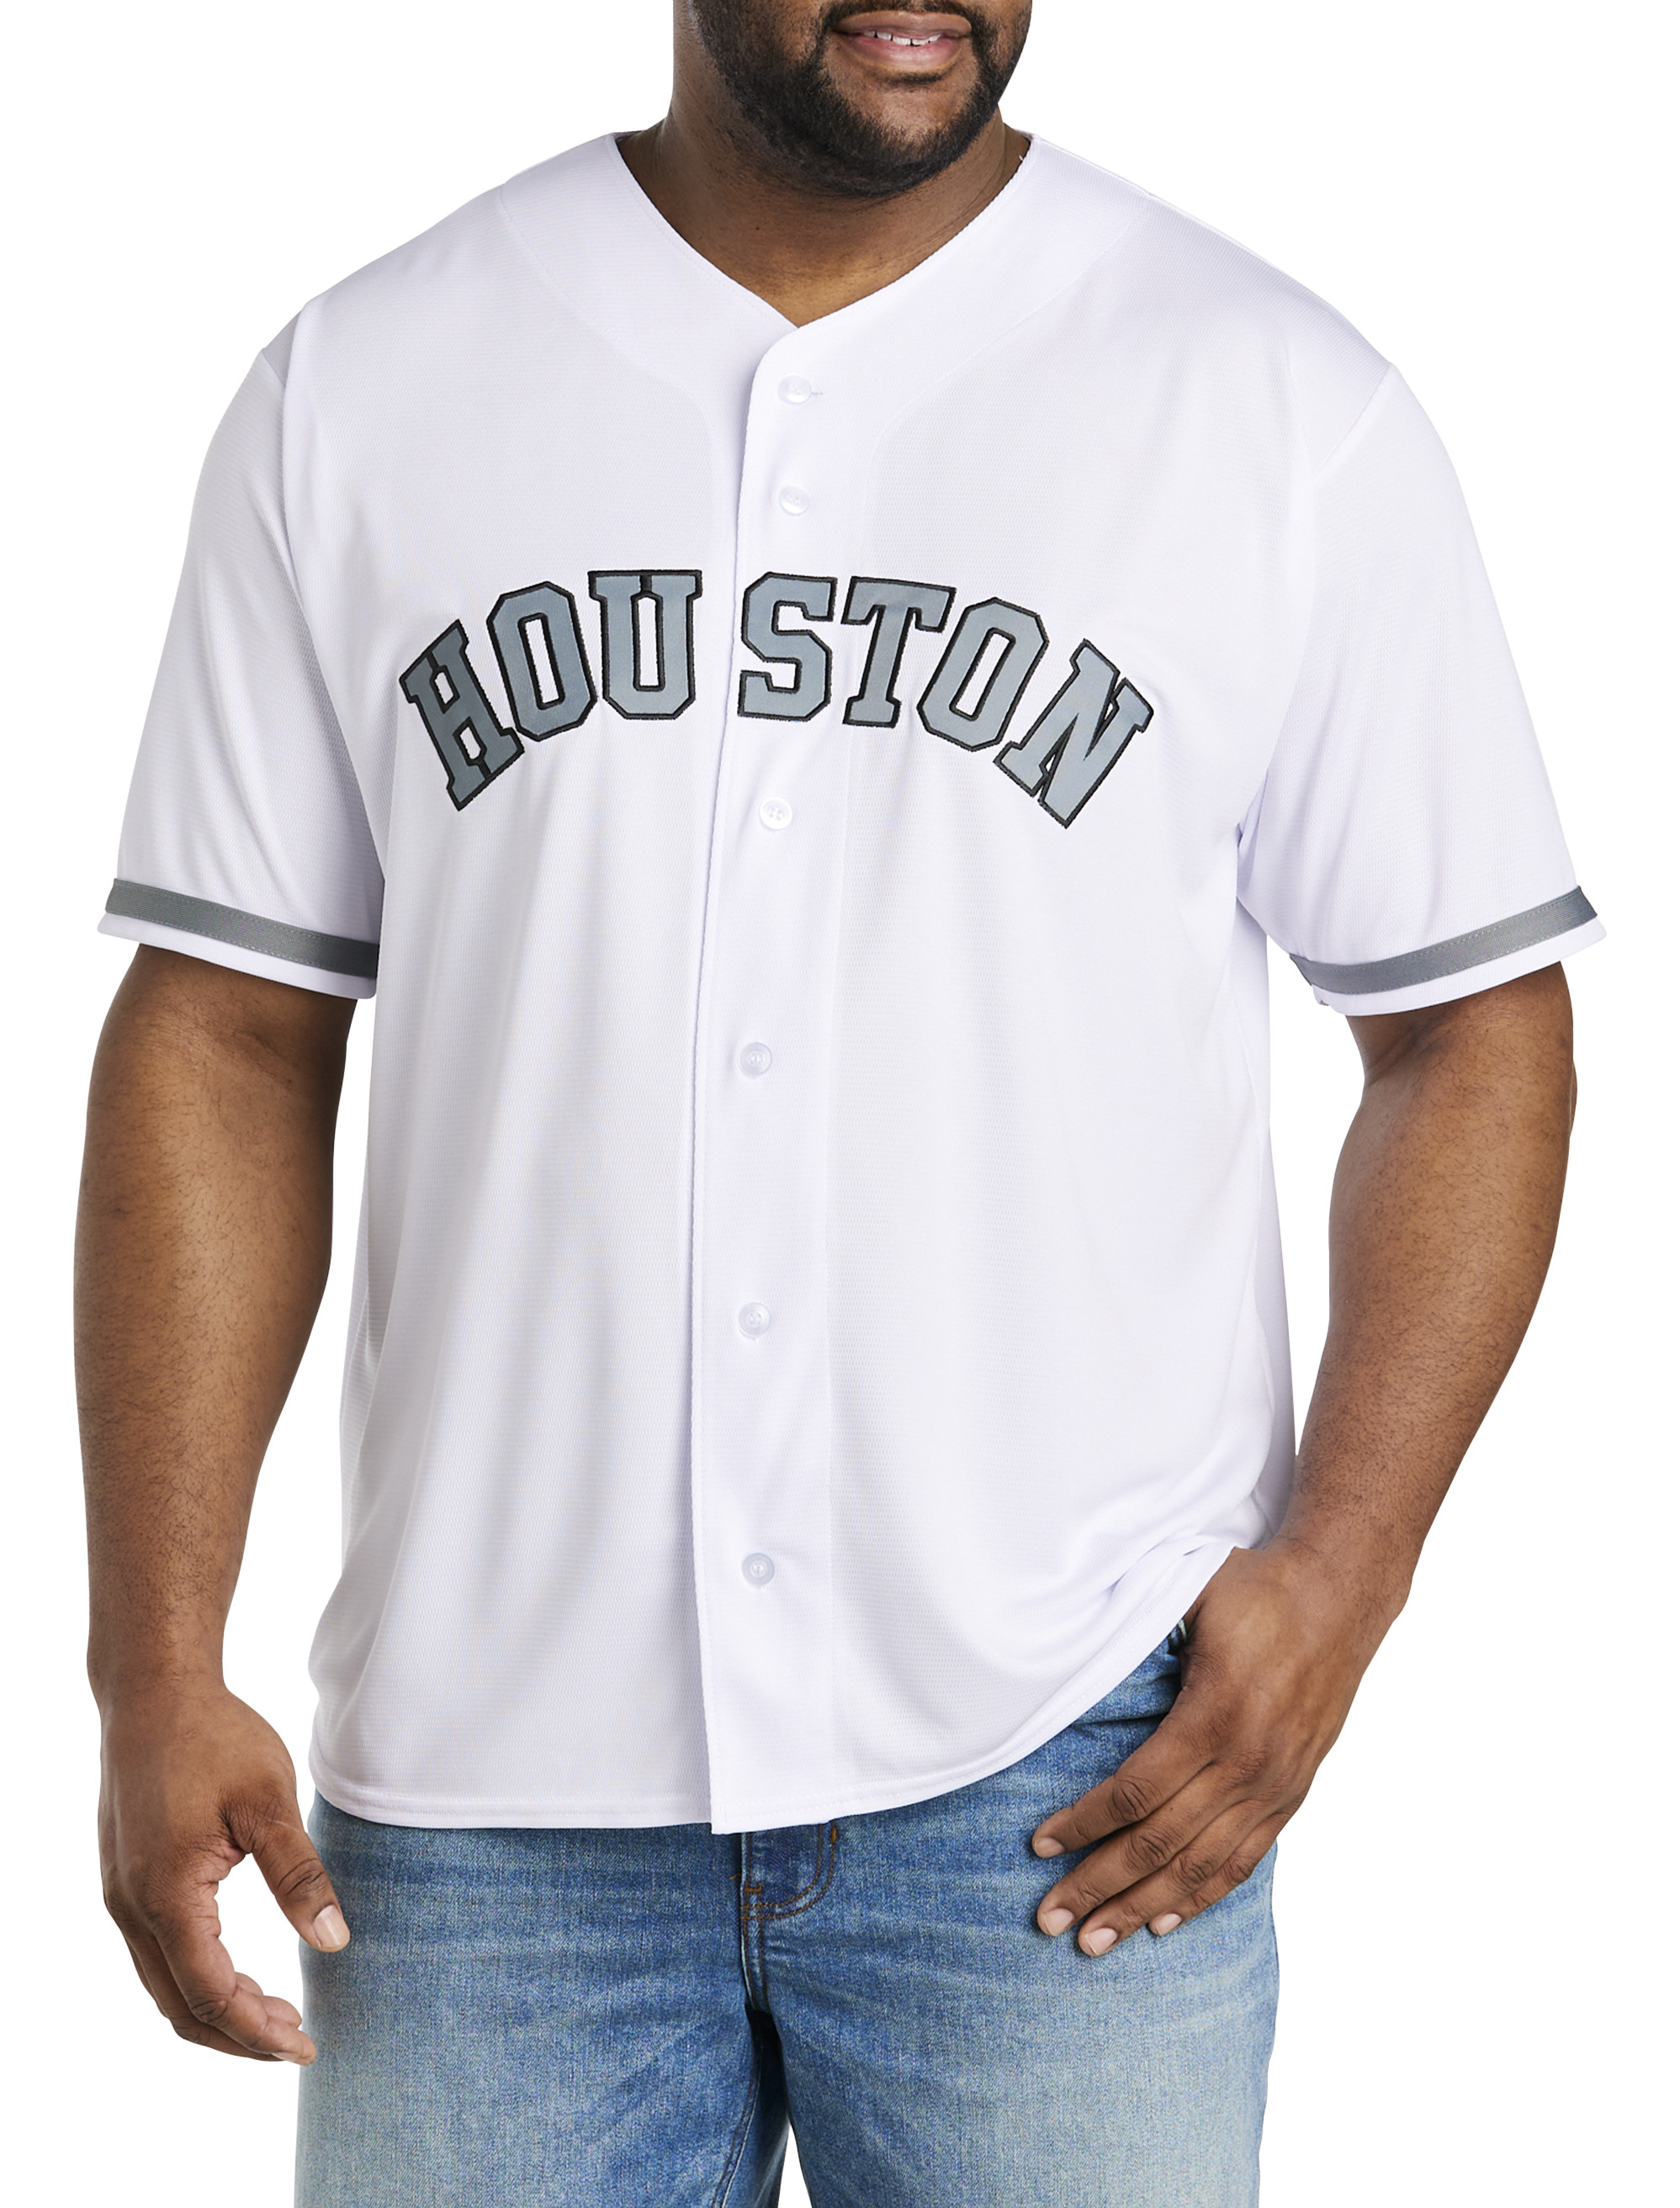 Buy the Lot of Big + Tall MLB Jerseys Size XXL